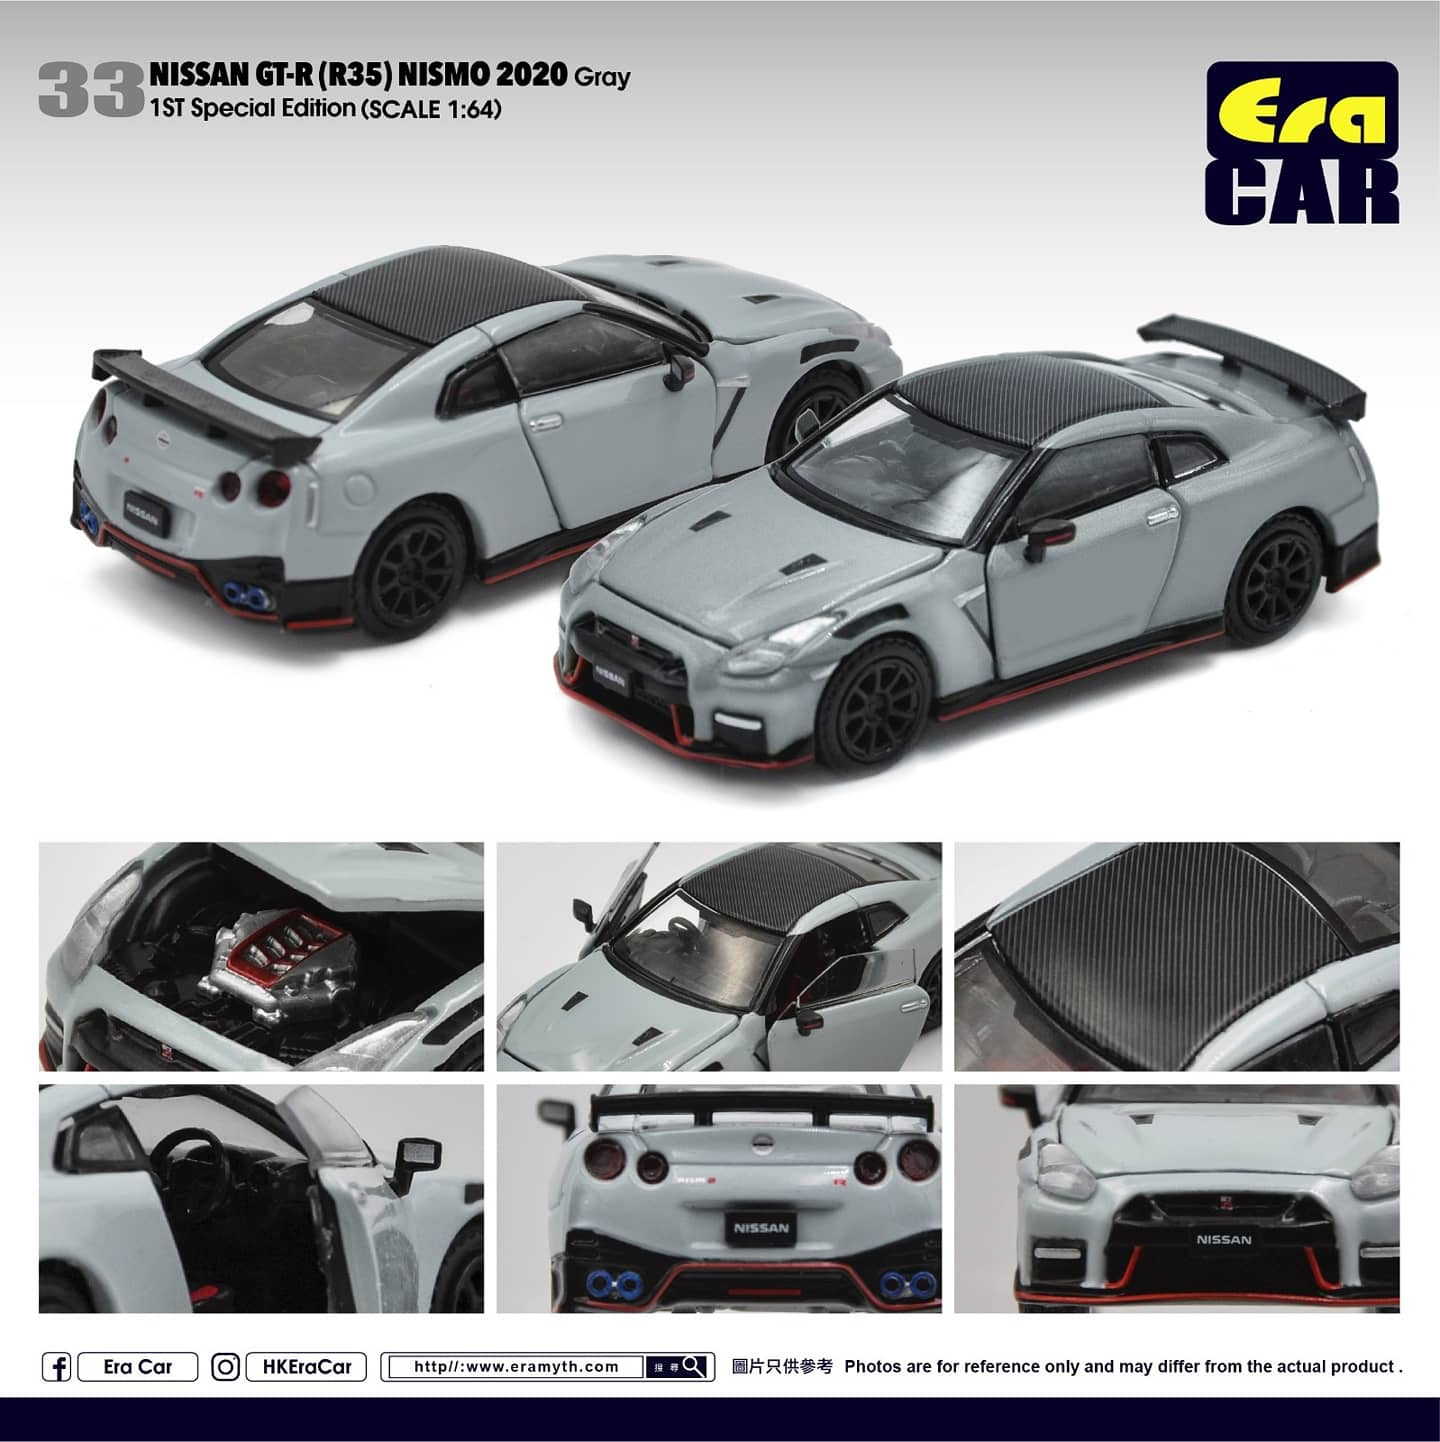 ERA Car #33 Nissan GT-R(R35) Nismo 2020 Gray Scale 1:64